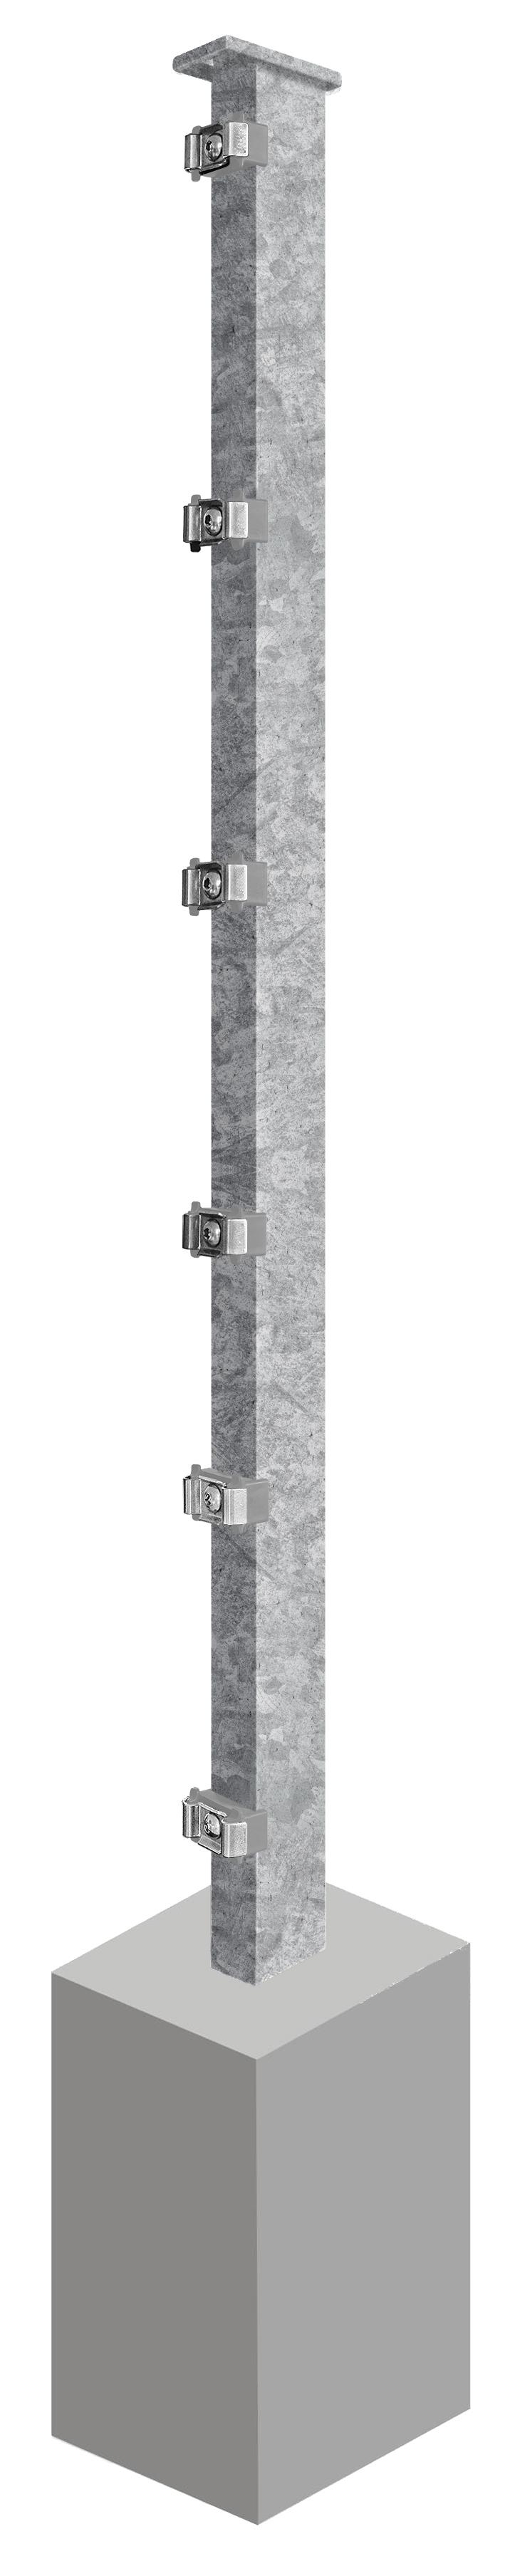 Pfosten System AC-Typ PSLF, für Zaunhöhe 1.230 mm